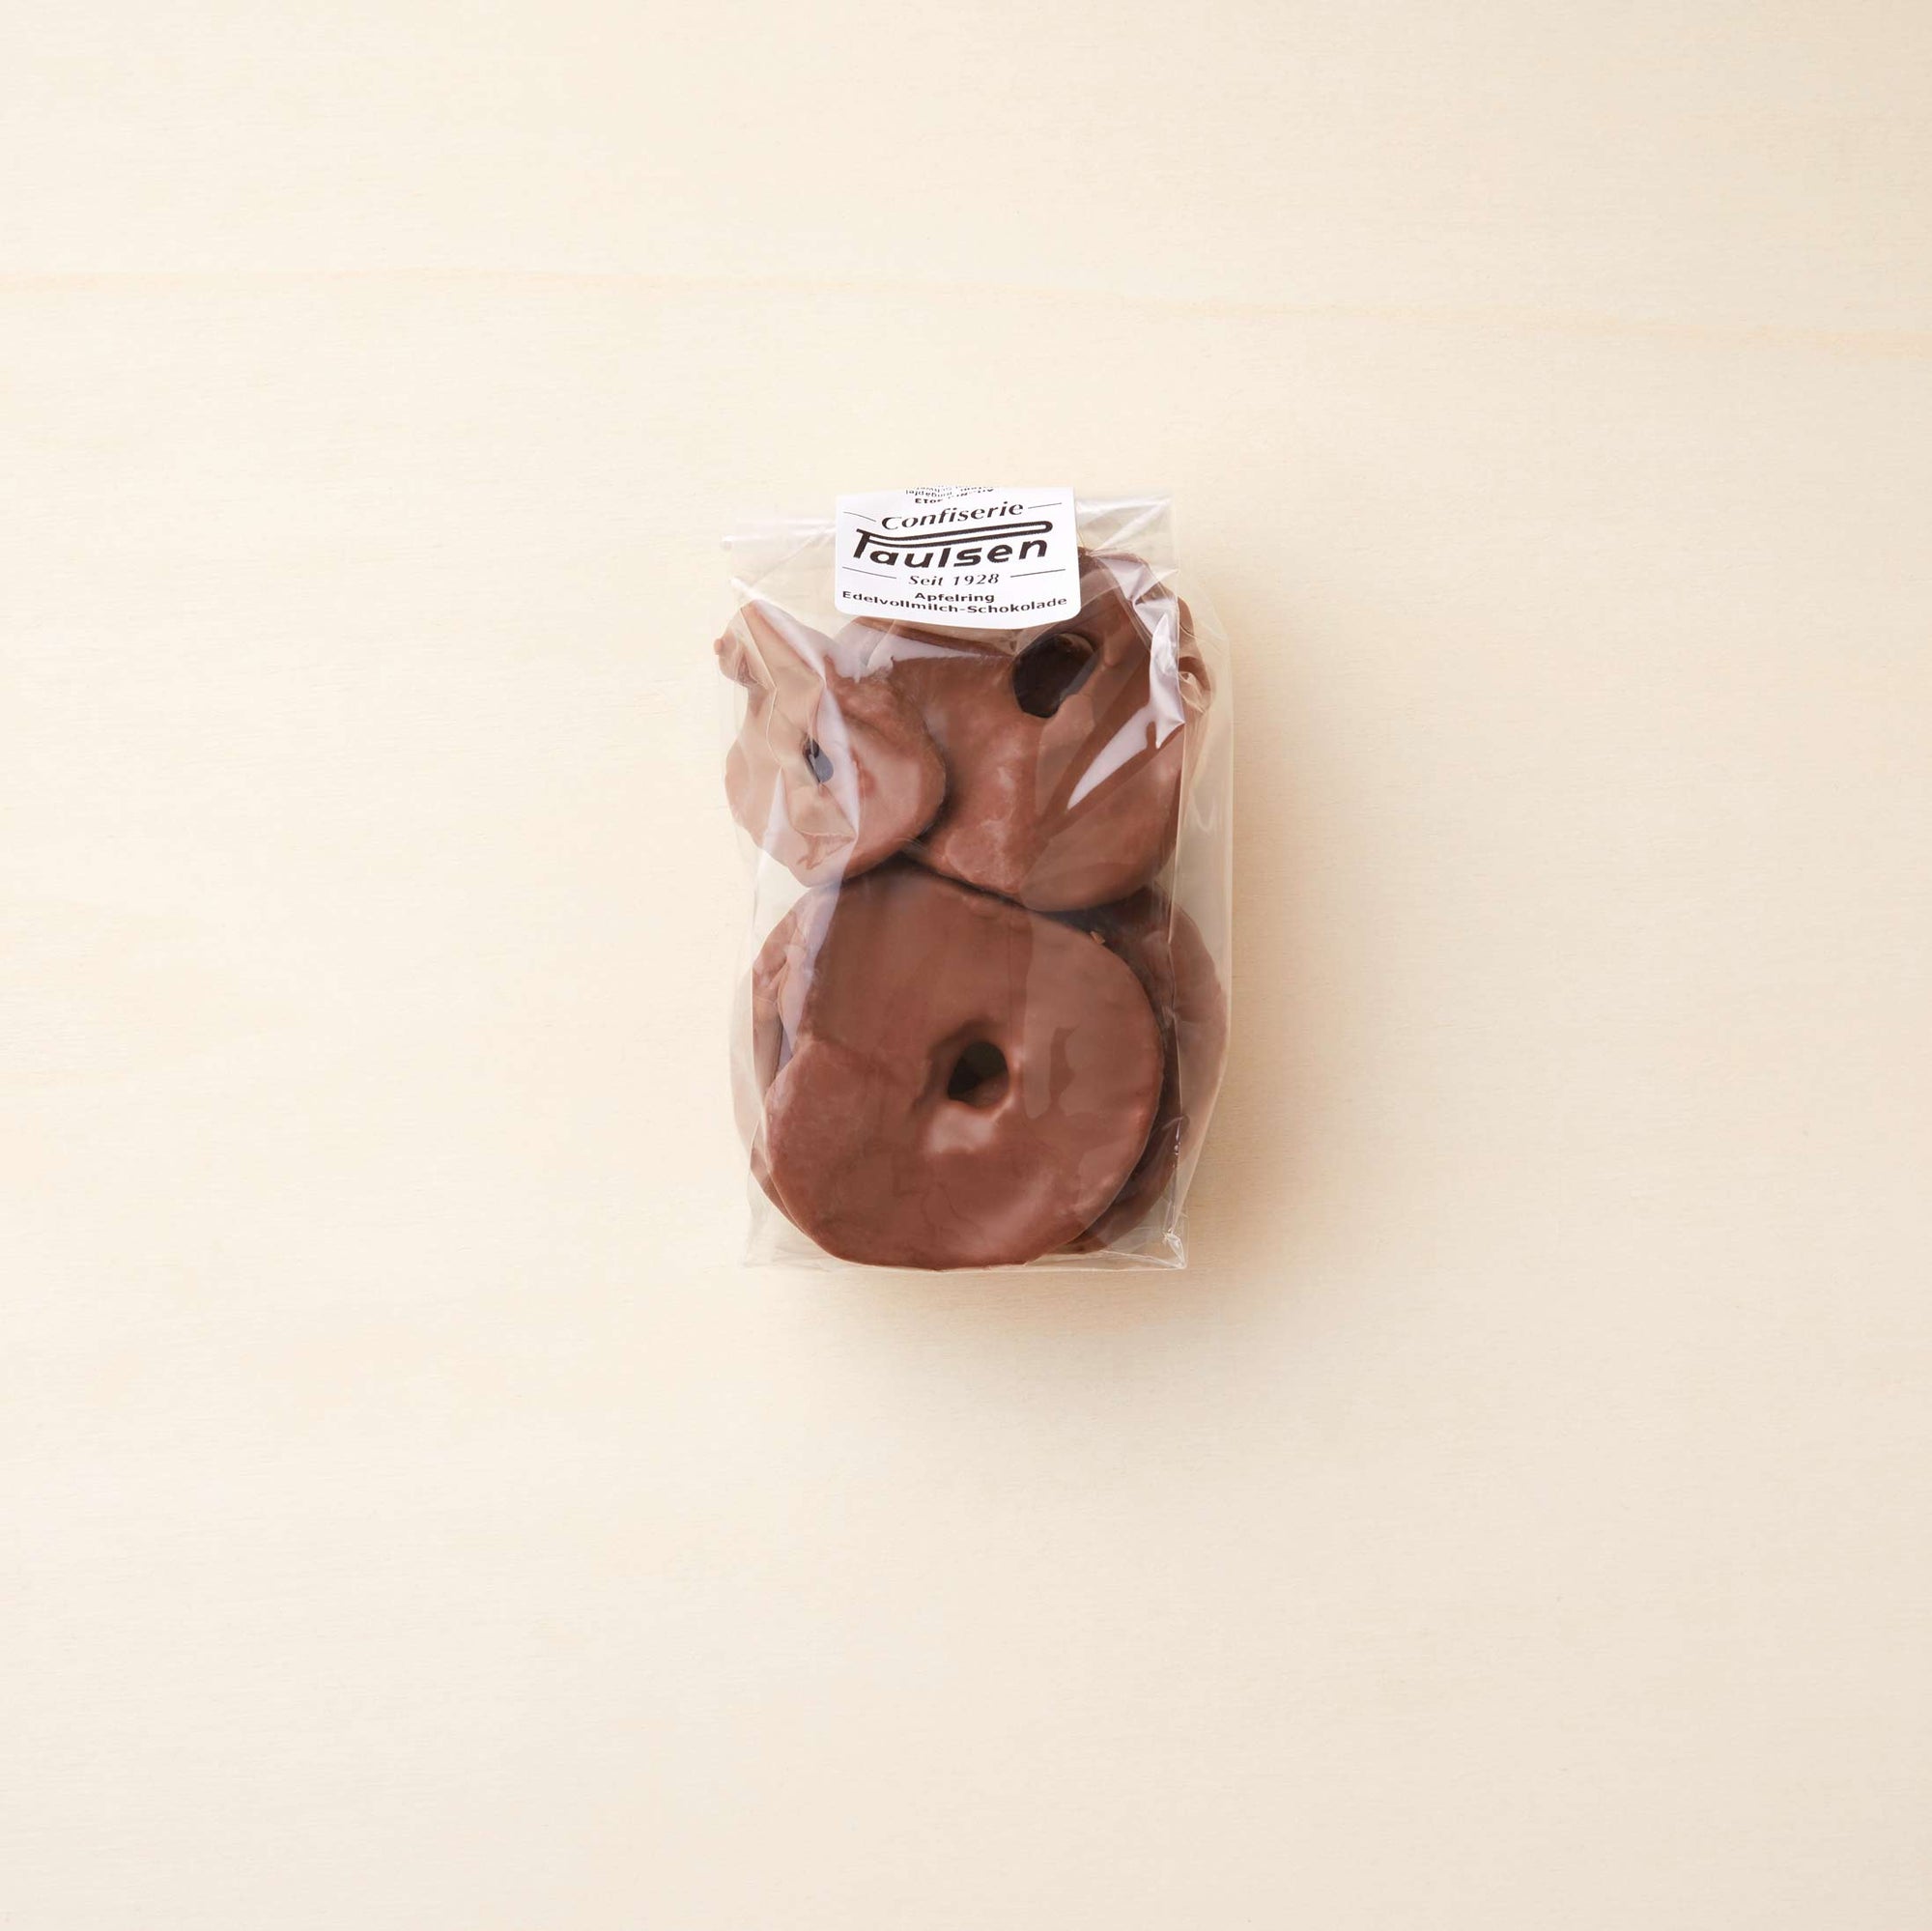 Durchsichtige Tüte mit Apfelringen in Edel-Vollmilch-Schokolade mit 38% Kakao von Confiserie Paulsen im Chocoversum